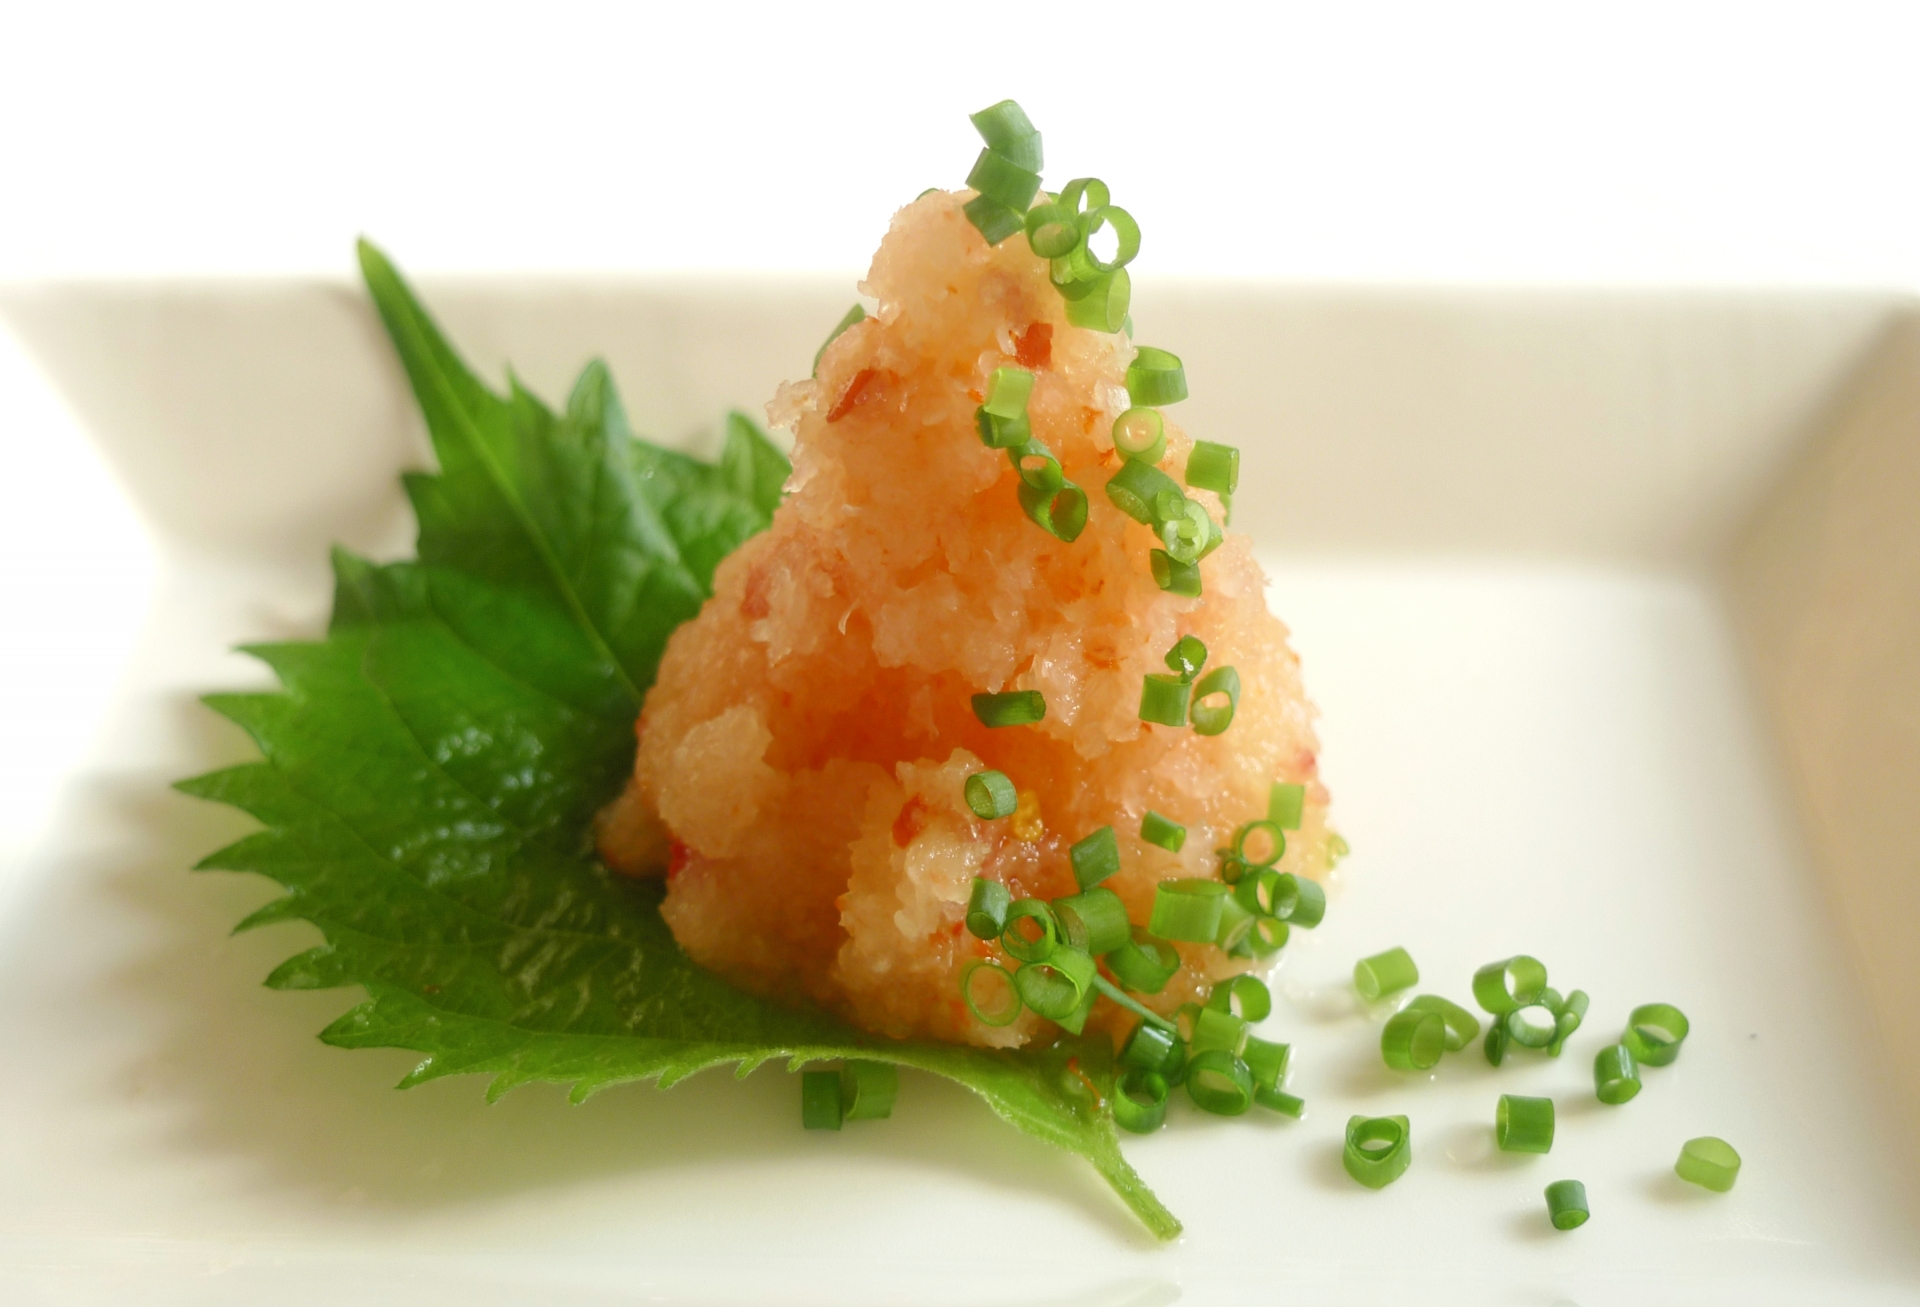 日式锅子蘸料万能萝卜泥 俗话说的冬吃萝卜 夏吃姜 且不论其养生药用 但仅从口感上来说冬天的白萝卜就是好吃的 当然了胡萝卜也变得更甜 更水了 职人 Com博客